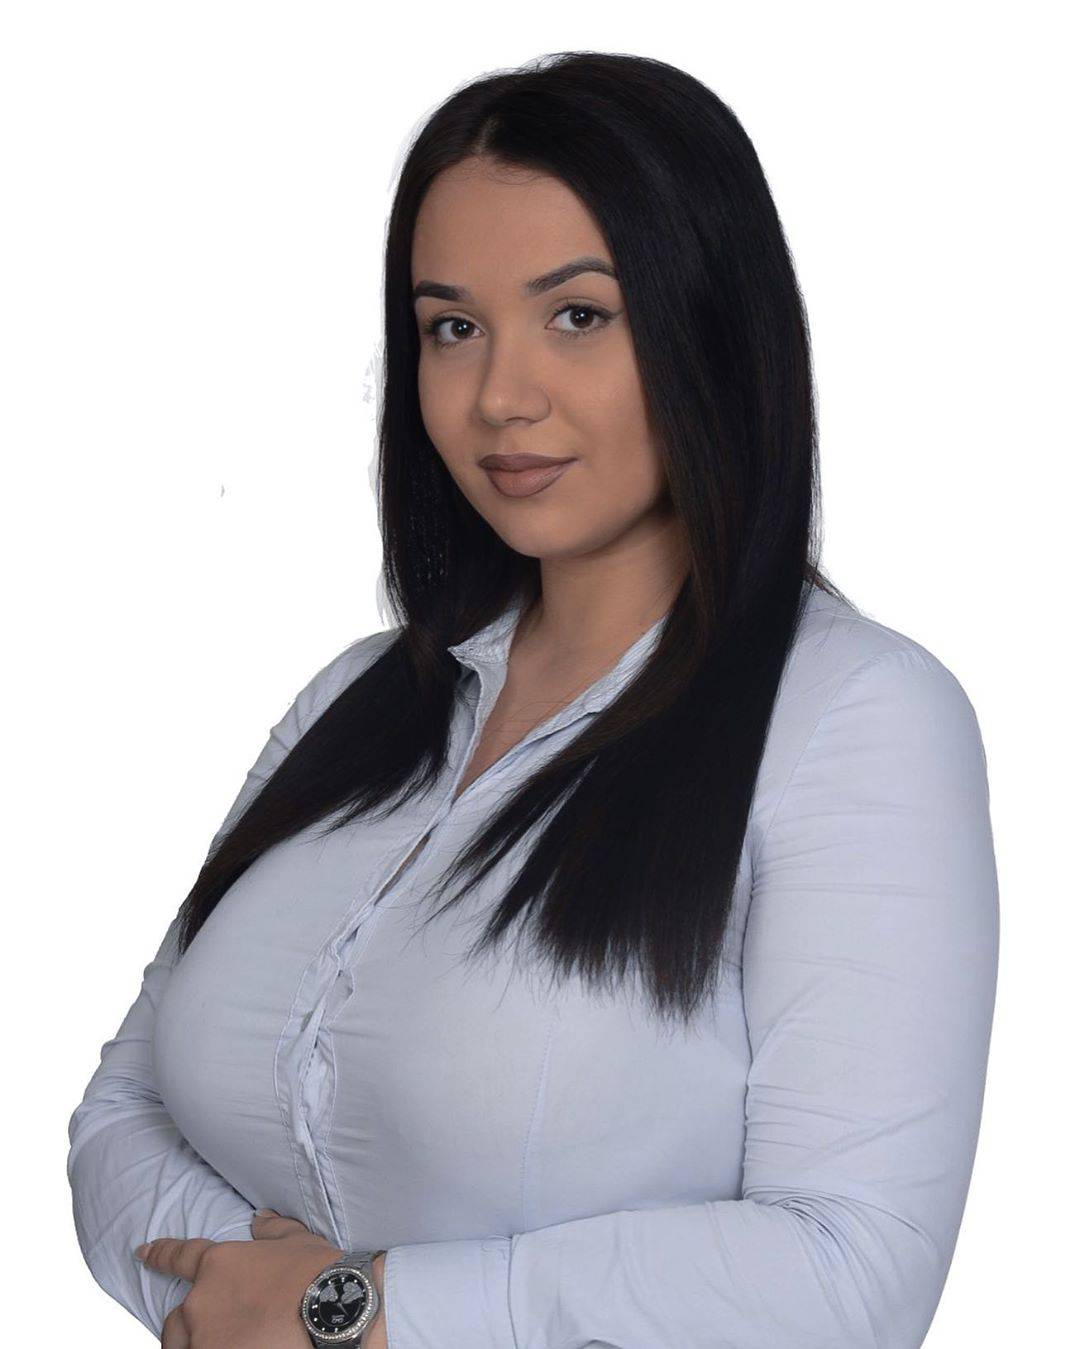 Influencerica (21) kandidatkinja je na lokalnim izborima u BiH